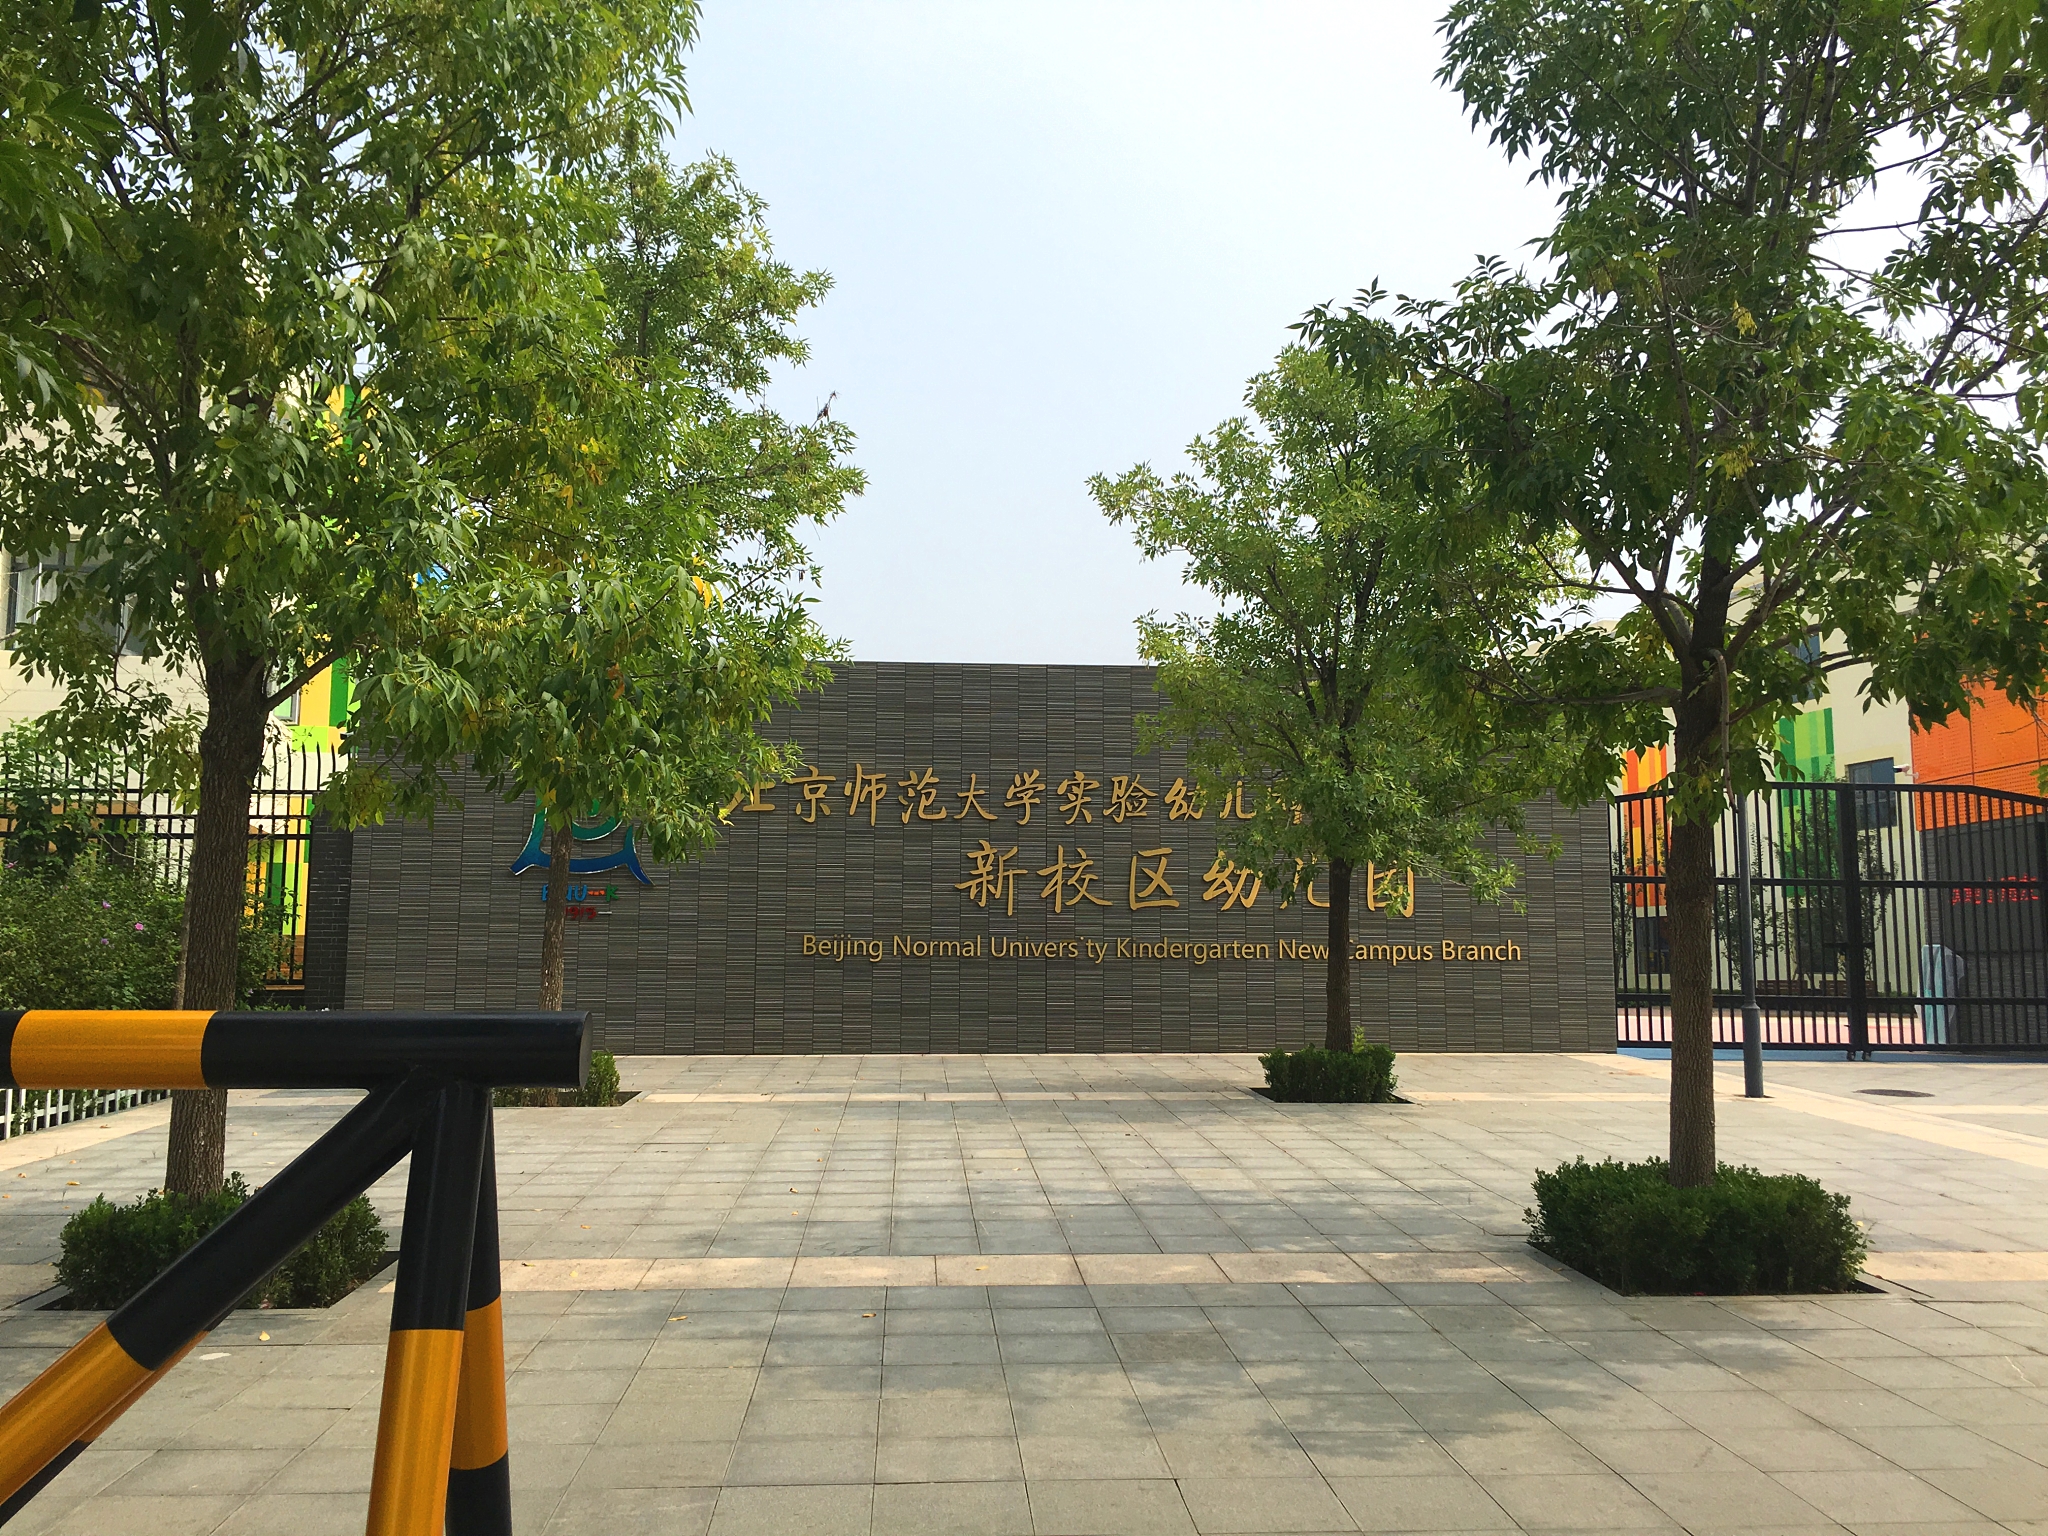 【京邦·校园广播系统案例】北京师范大学实验幼儿园